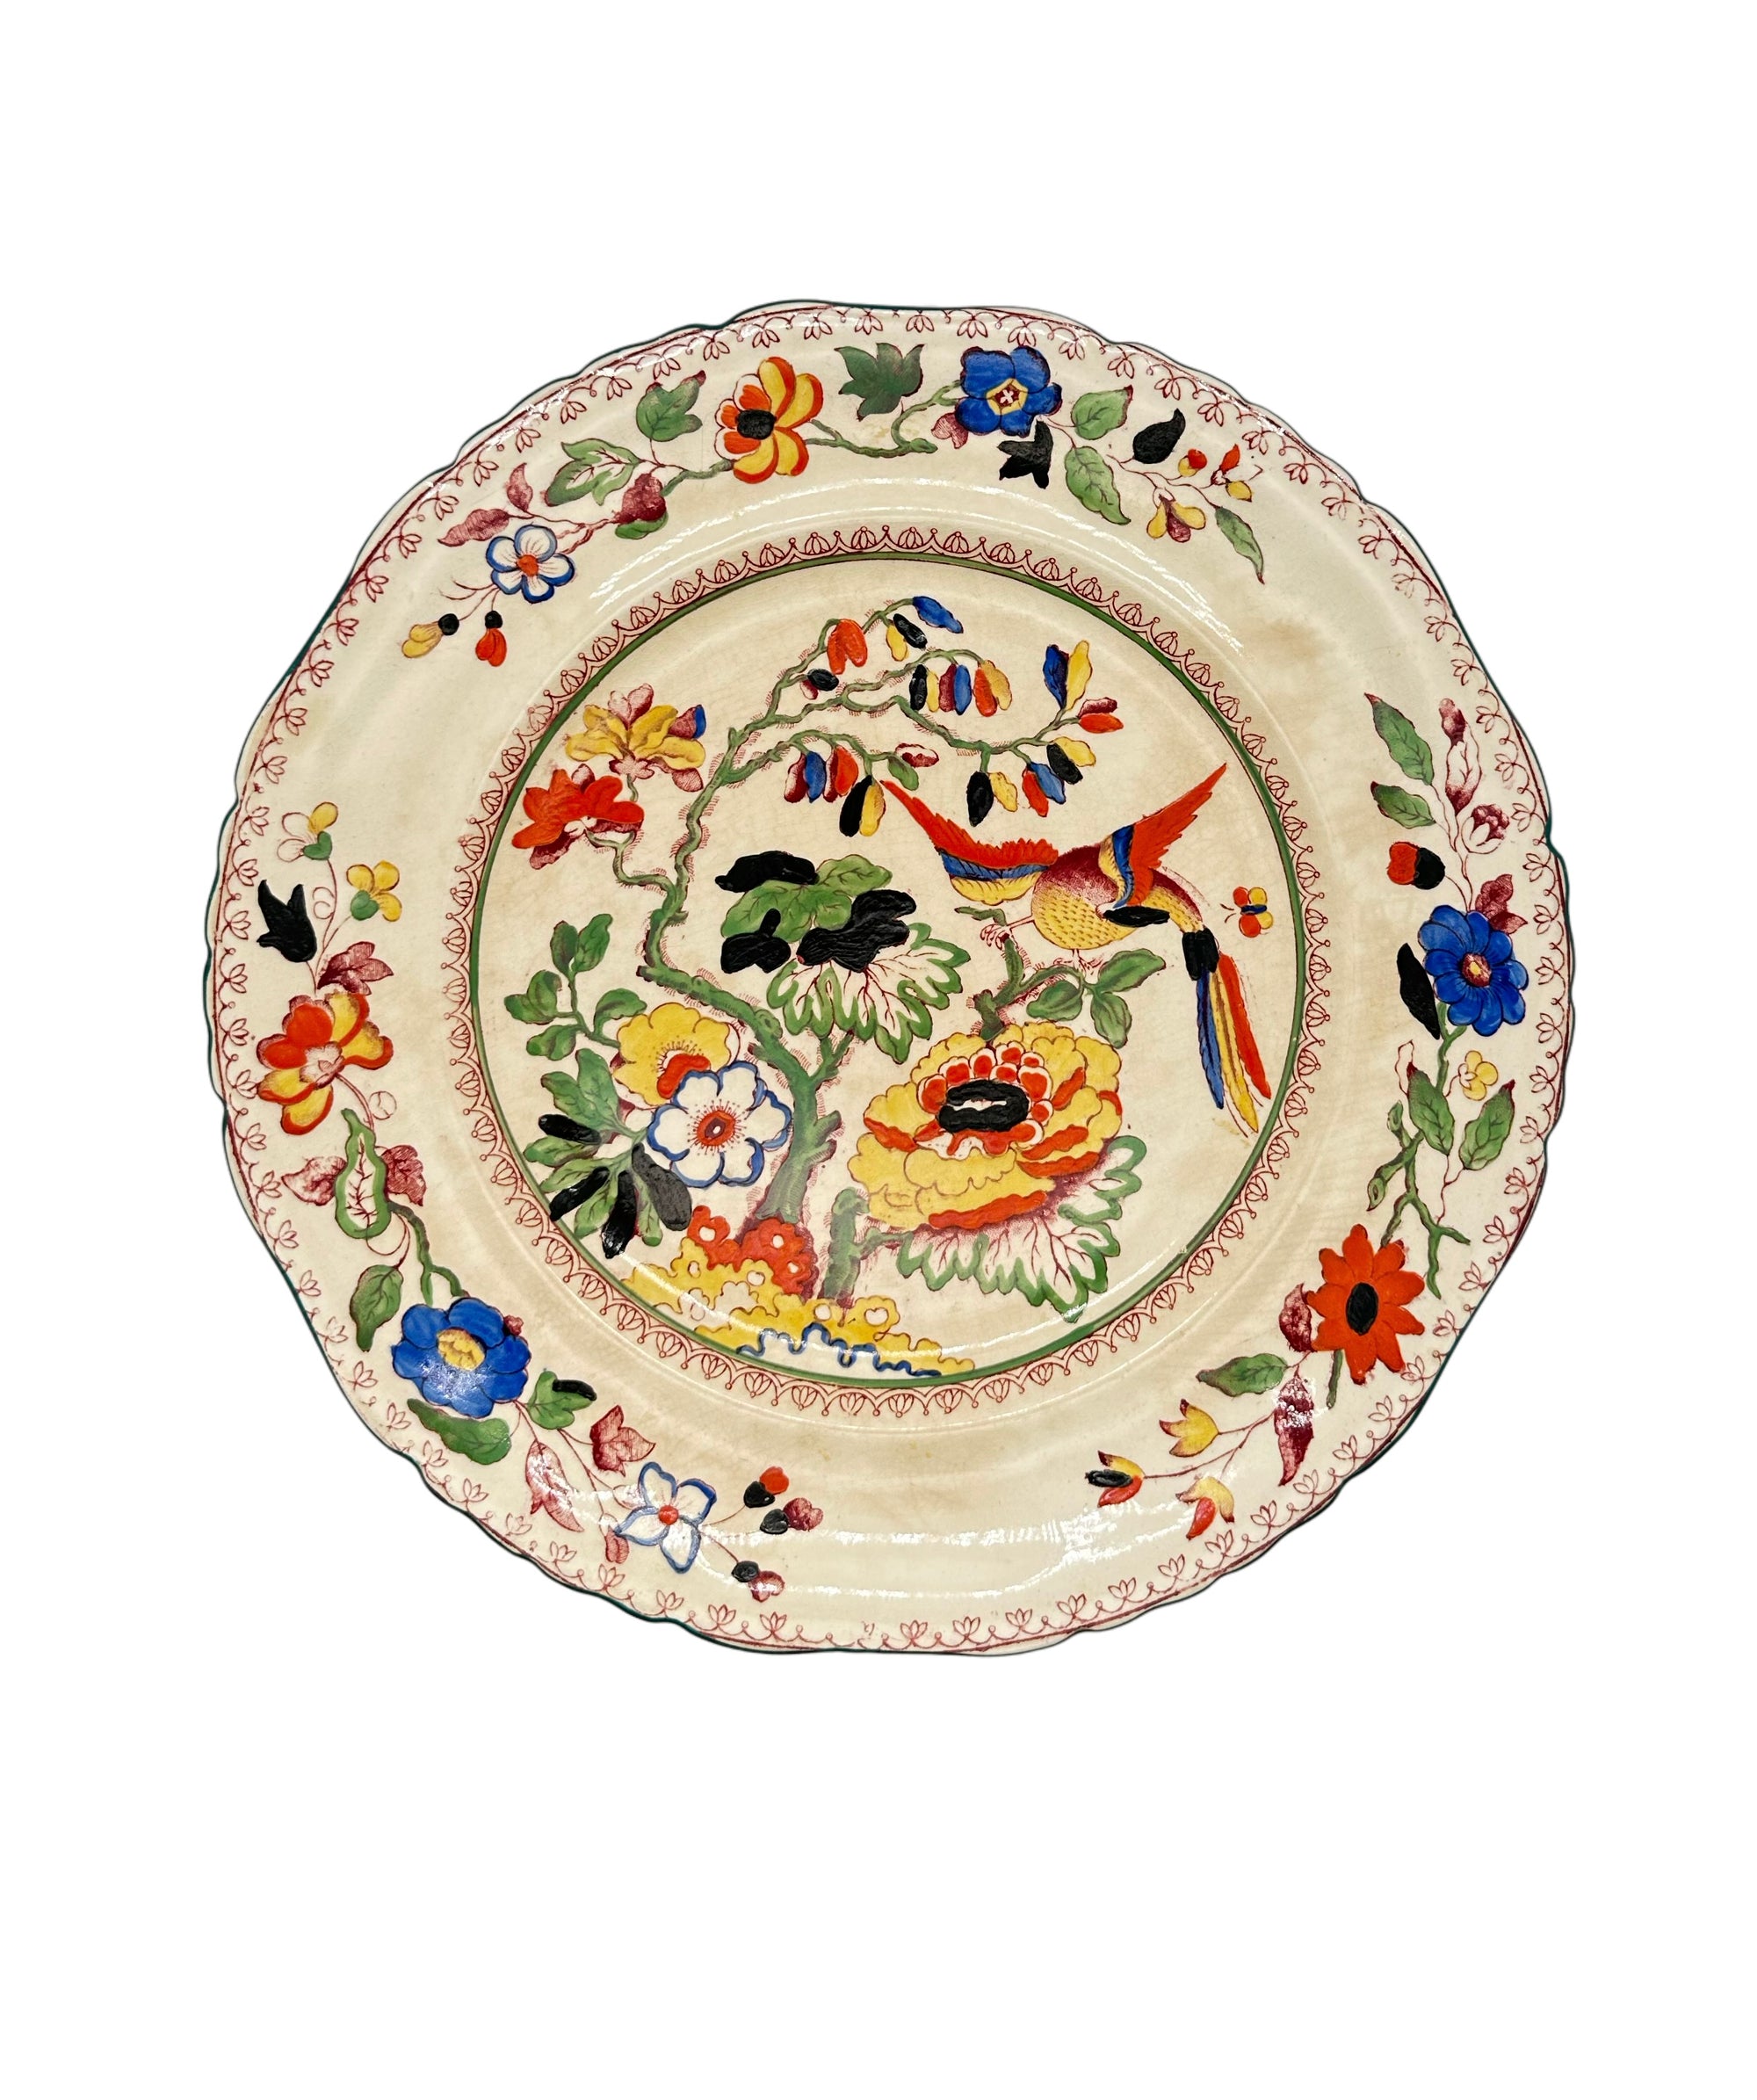 9 inch Antique Multi Color Floral Motif Mason's Plate 